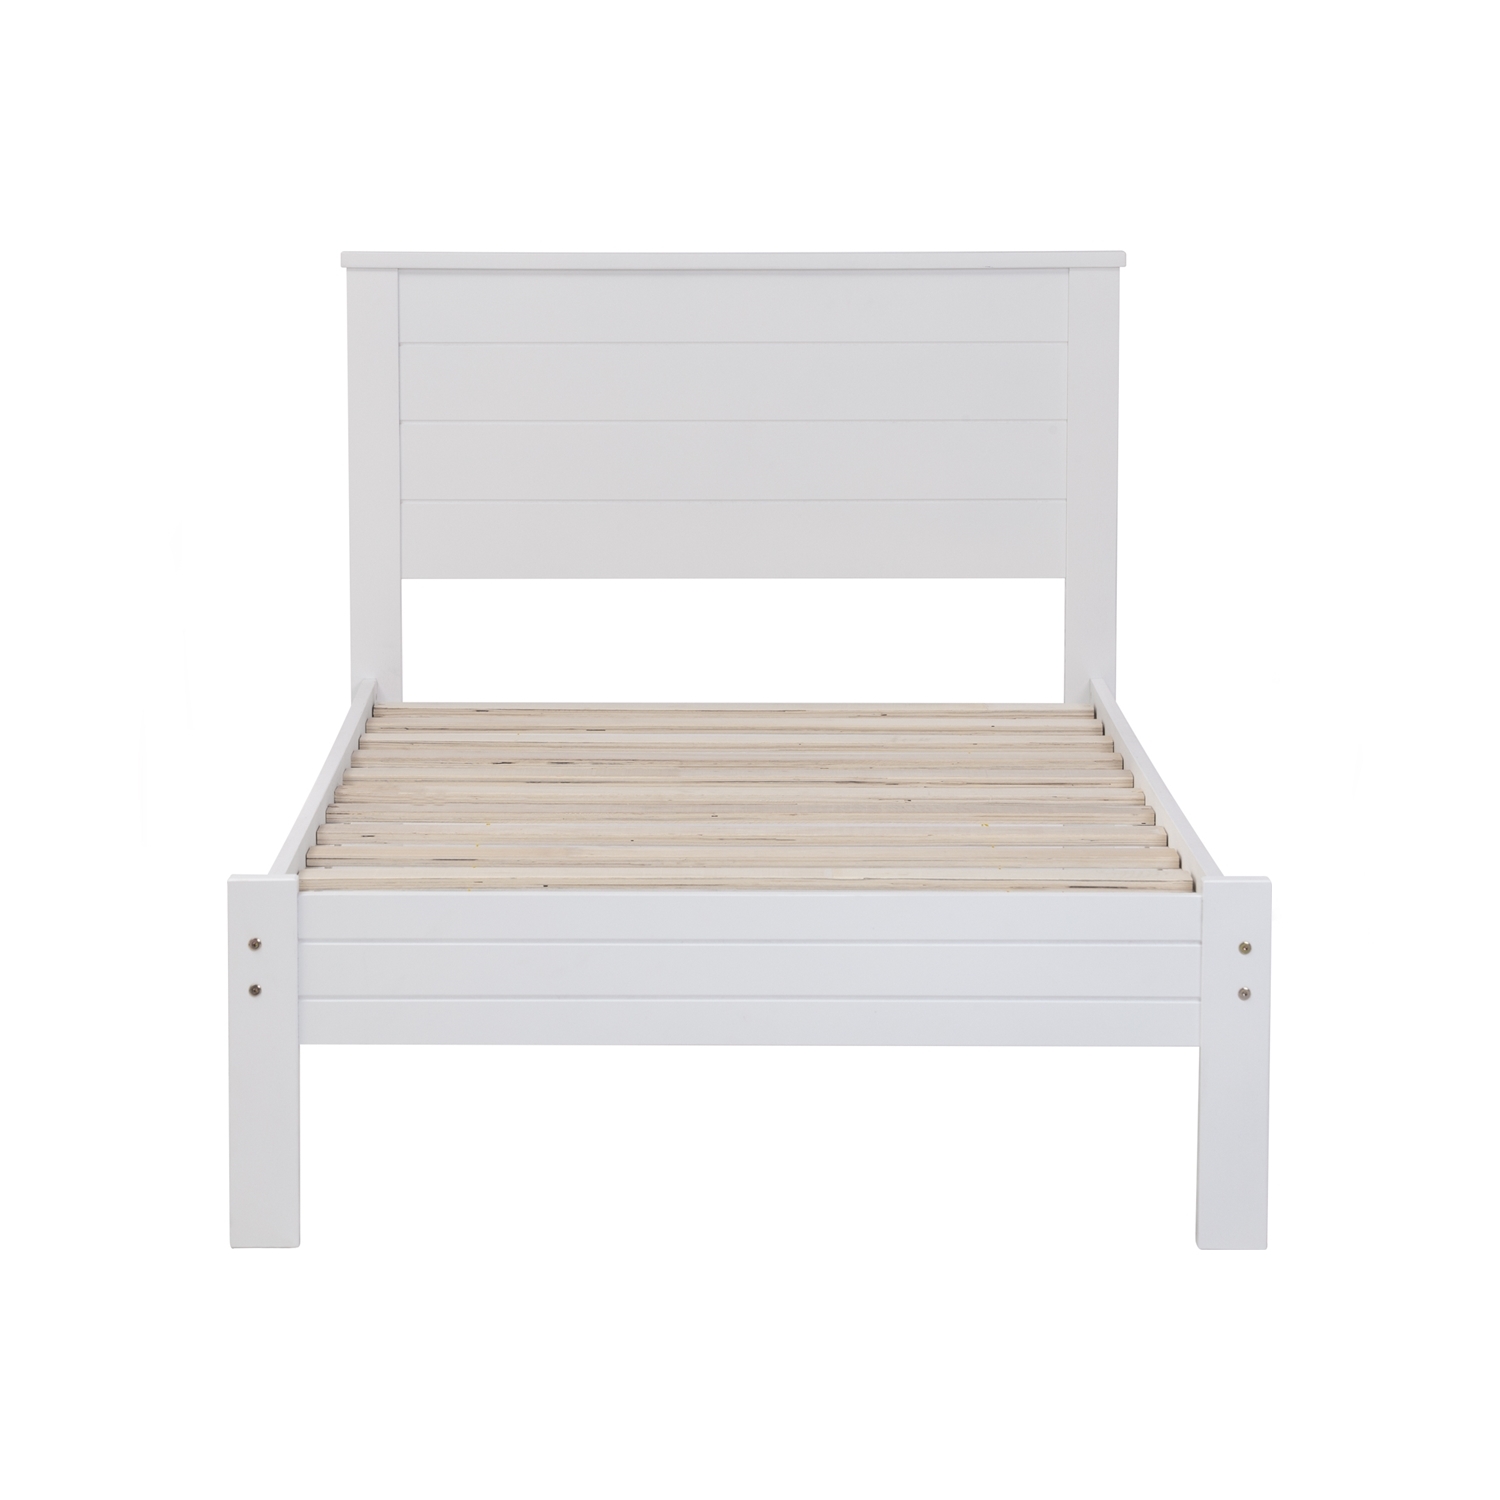 AIMIZON Crendo single bed in White colour